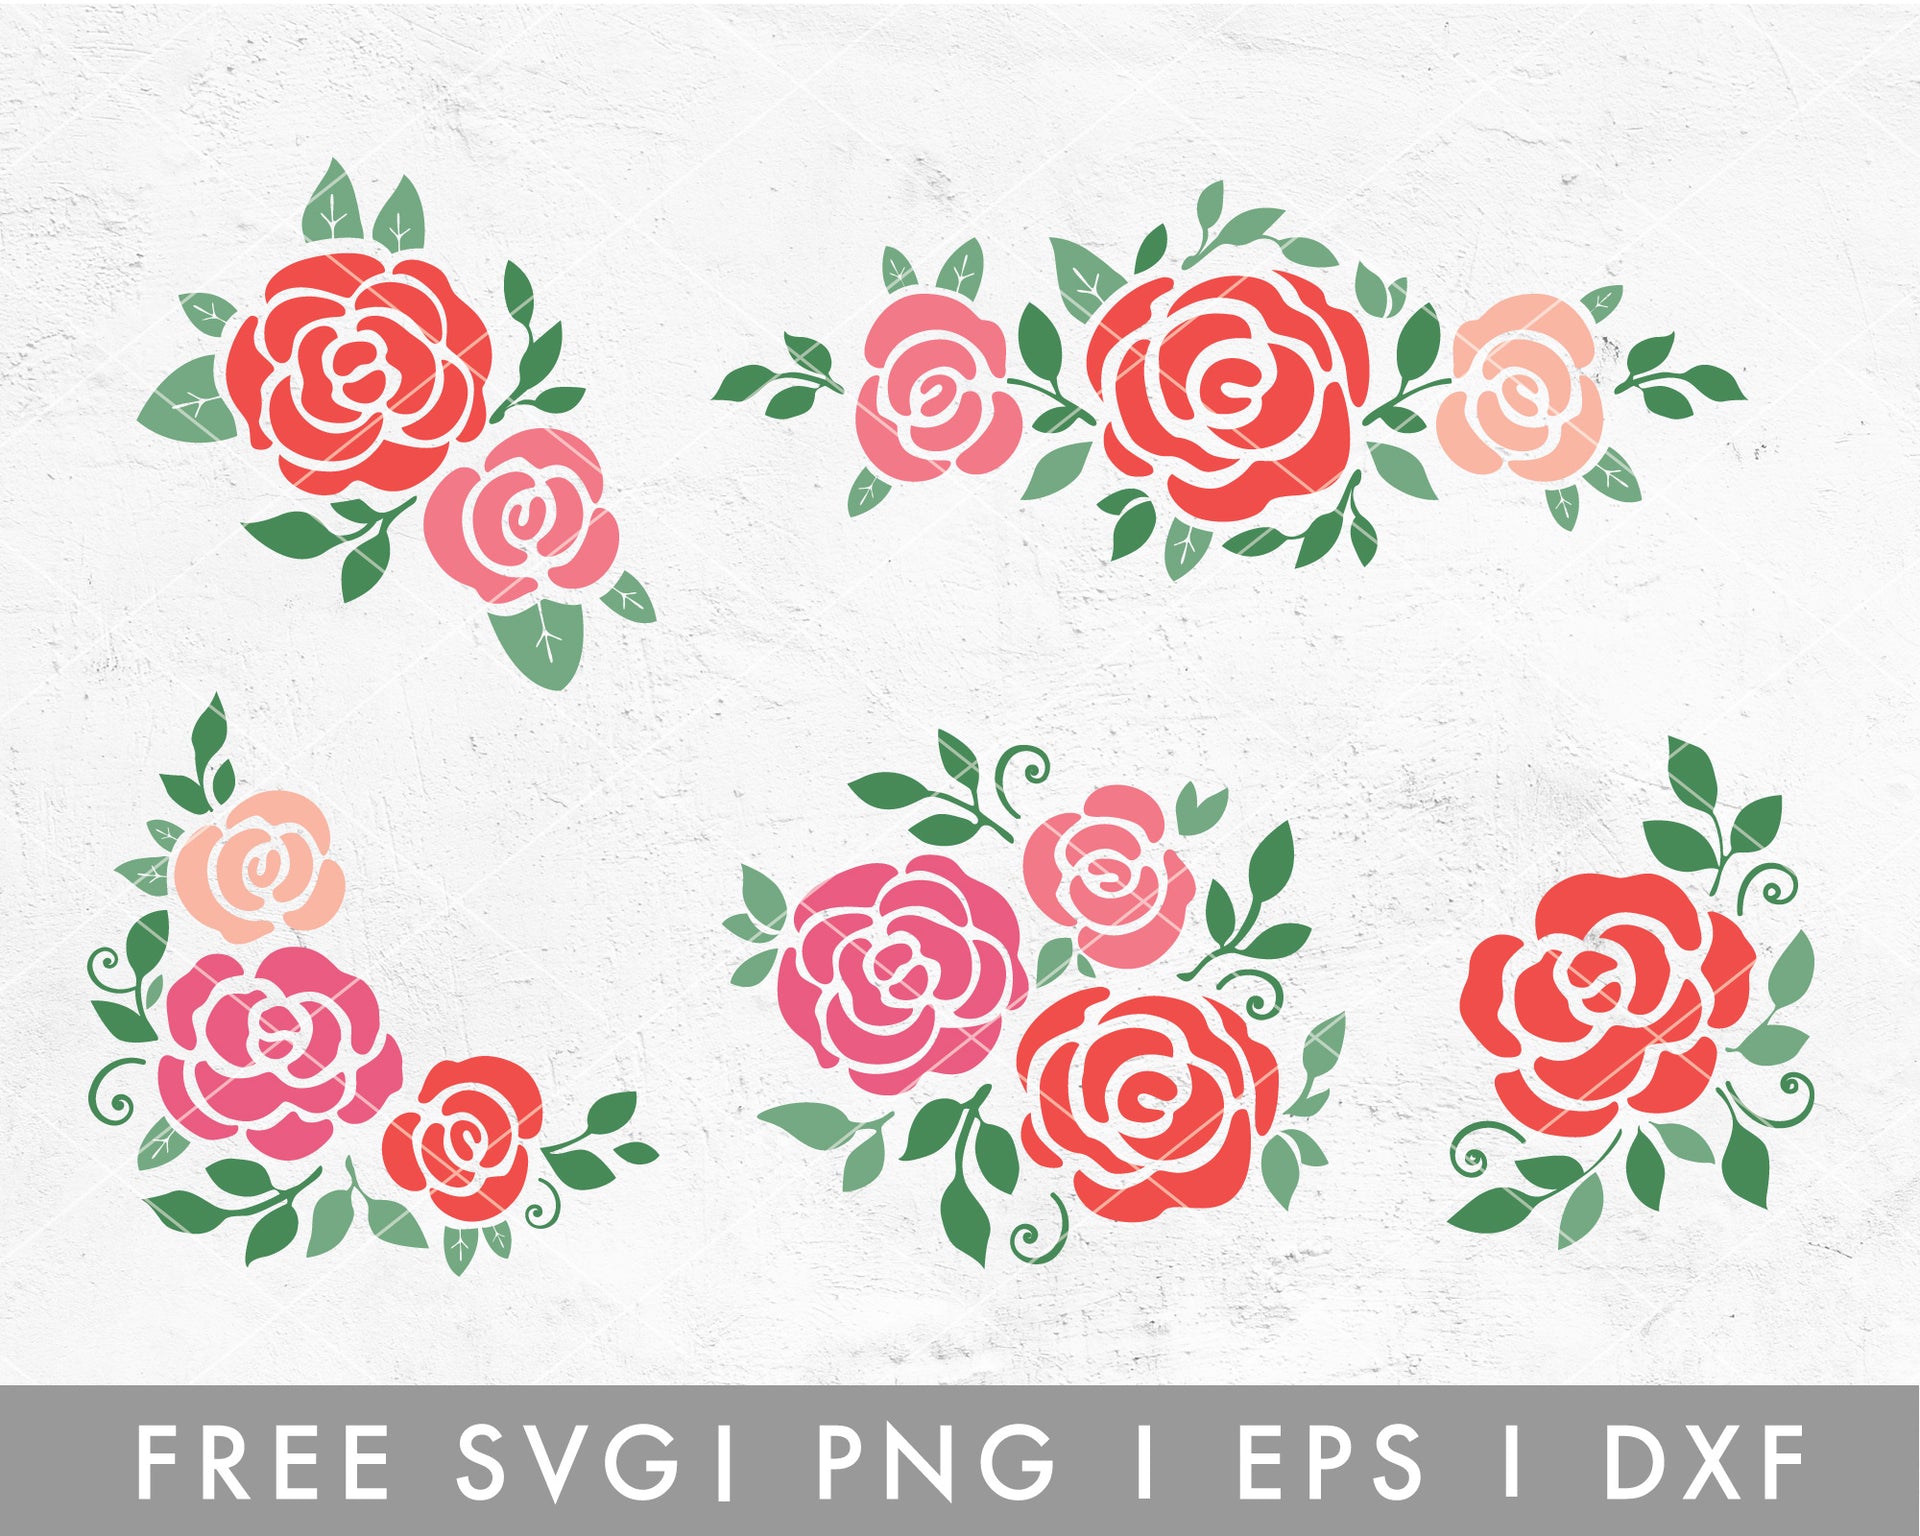 Roses SVG, Roses set SVG, Single Rose SVG